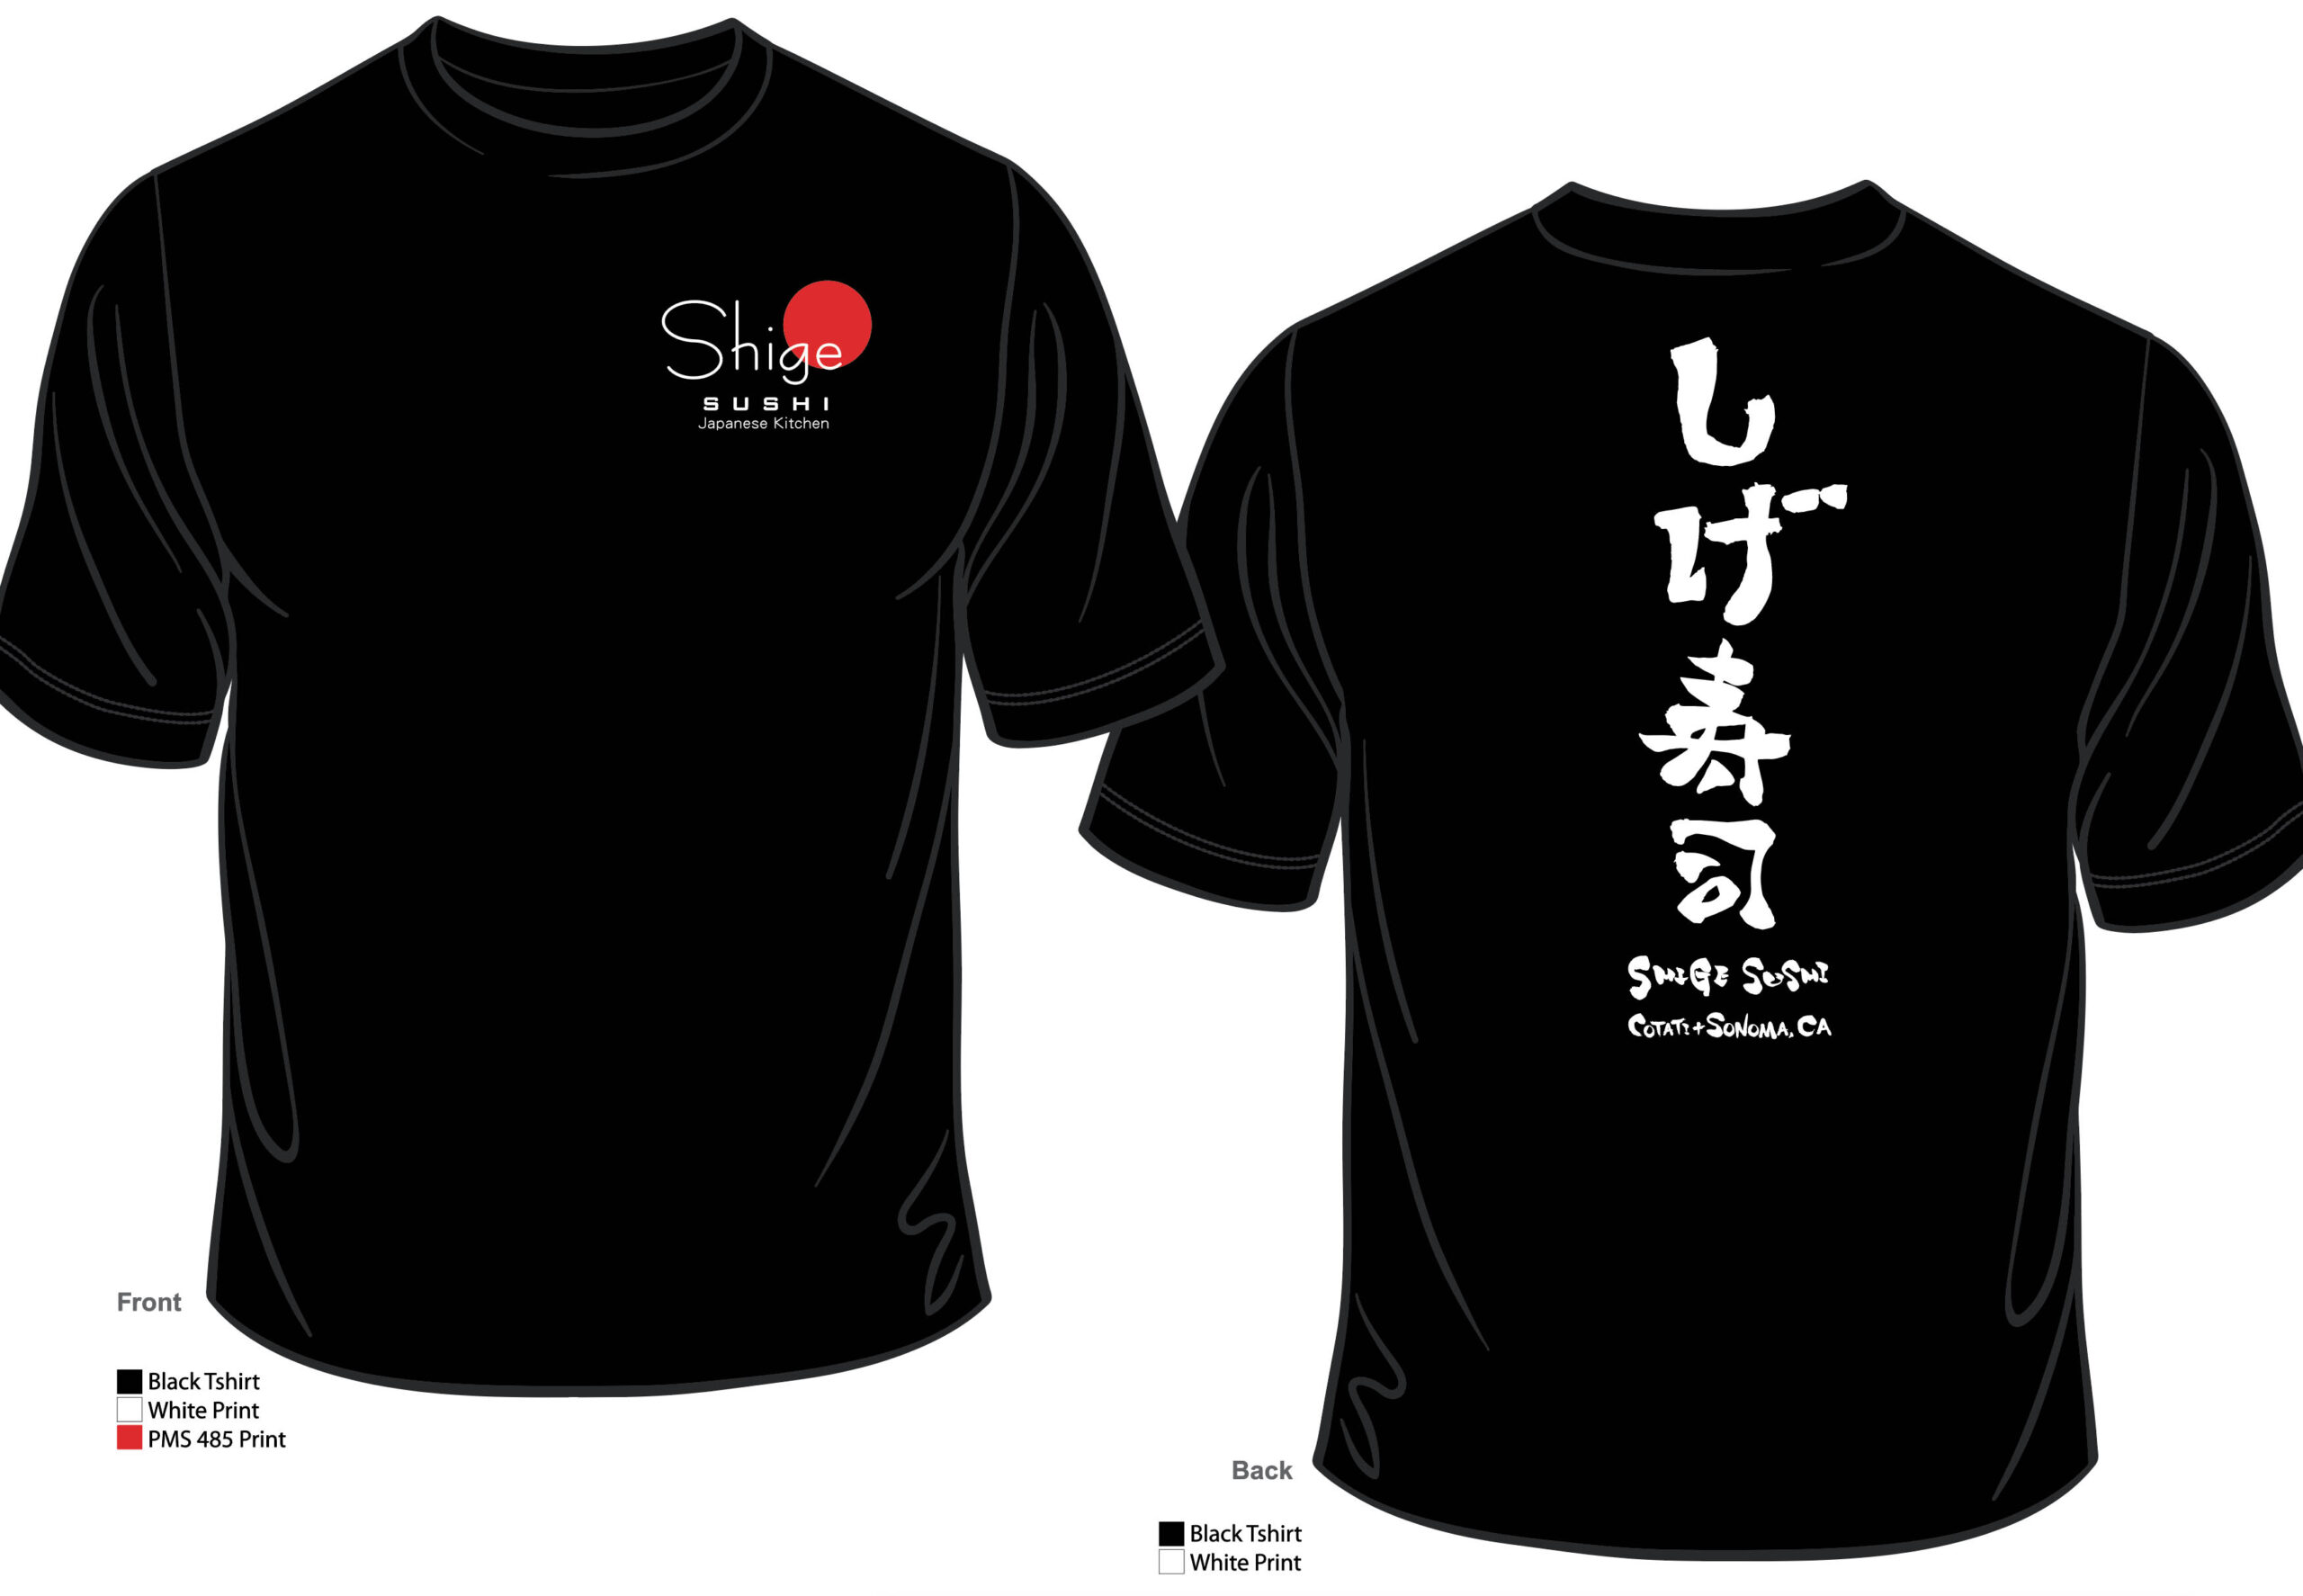 Shige Sushi Tshirt Design by emi